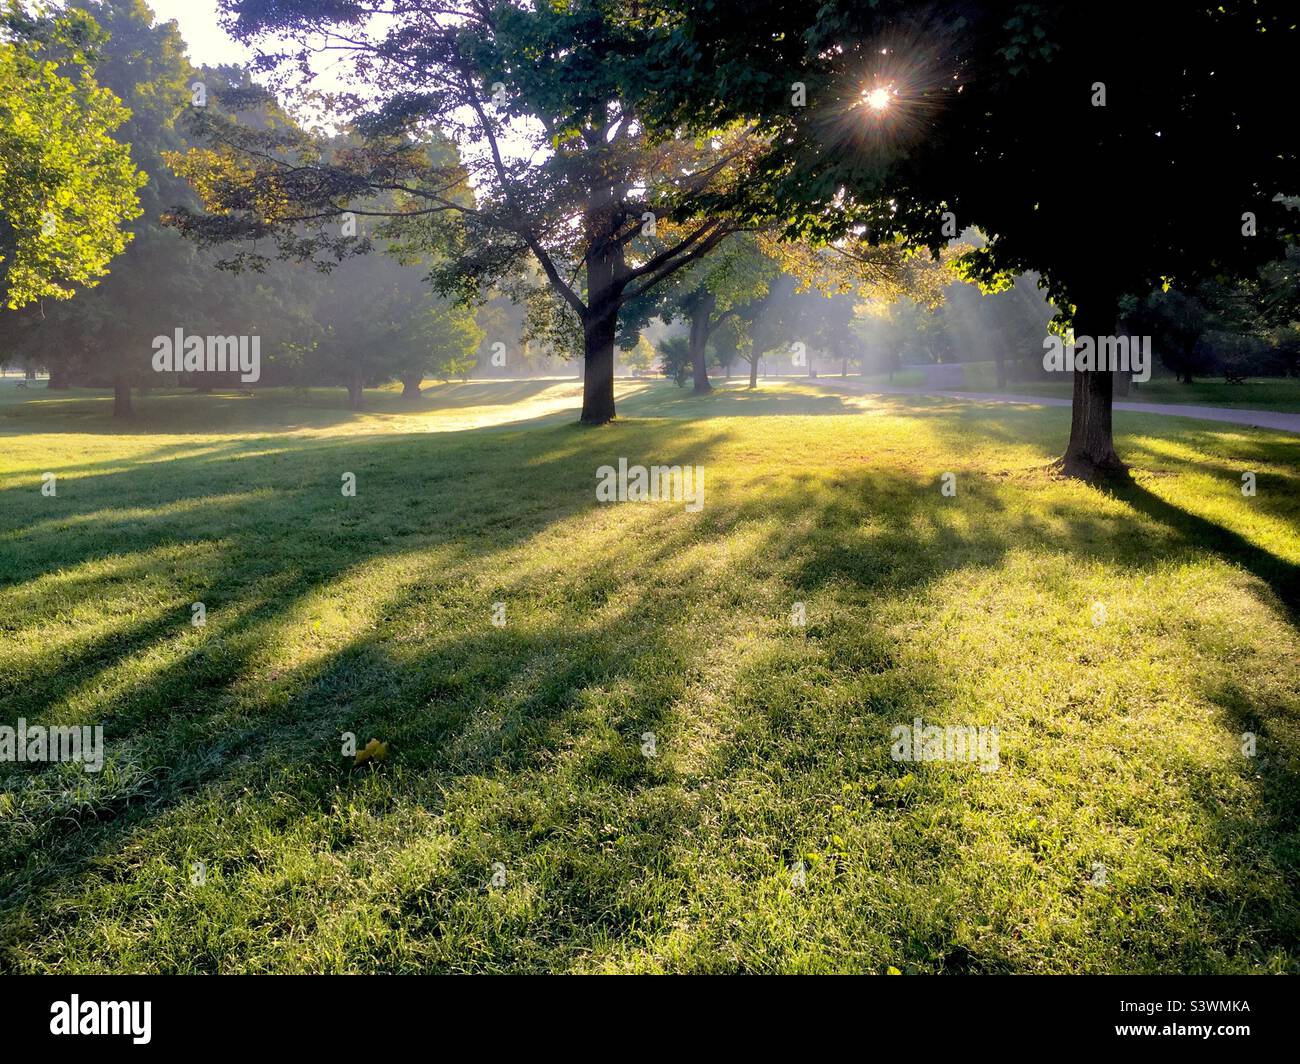 Buon mattino presto in un bel parco, Ontario, Canada. Gioco di luce e ombra. Luogo perfetto per contemplazione ispirata, meditazione o yoku shin-rin. Non ci sono ancora persone o animali. Foto Stock